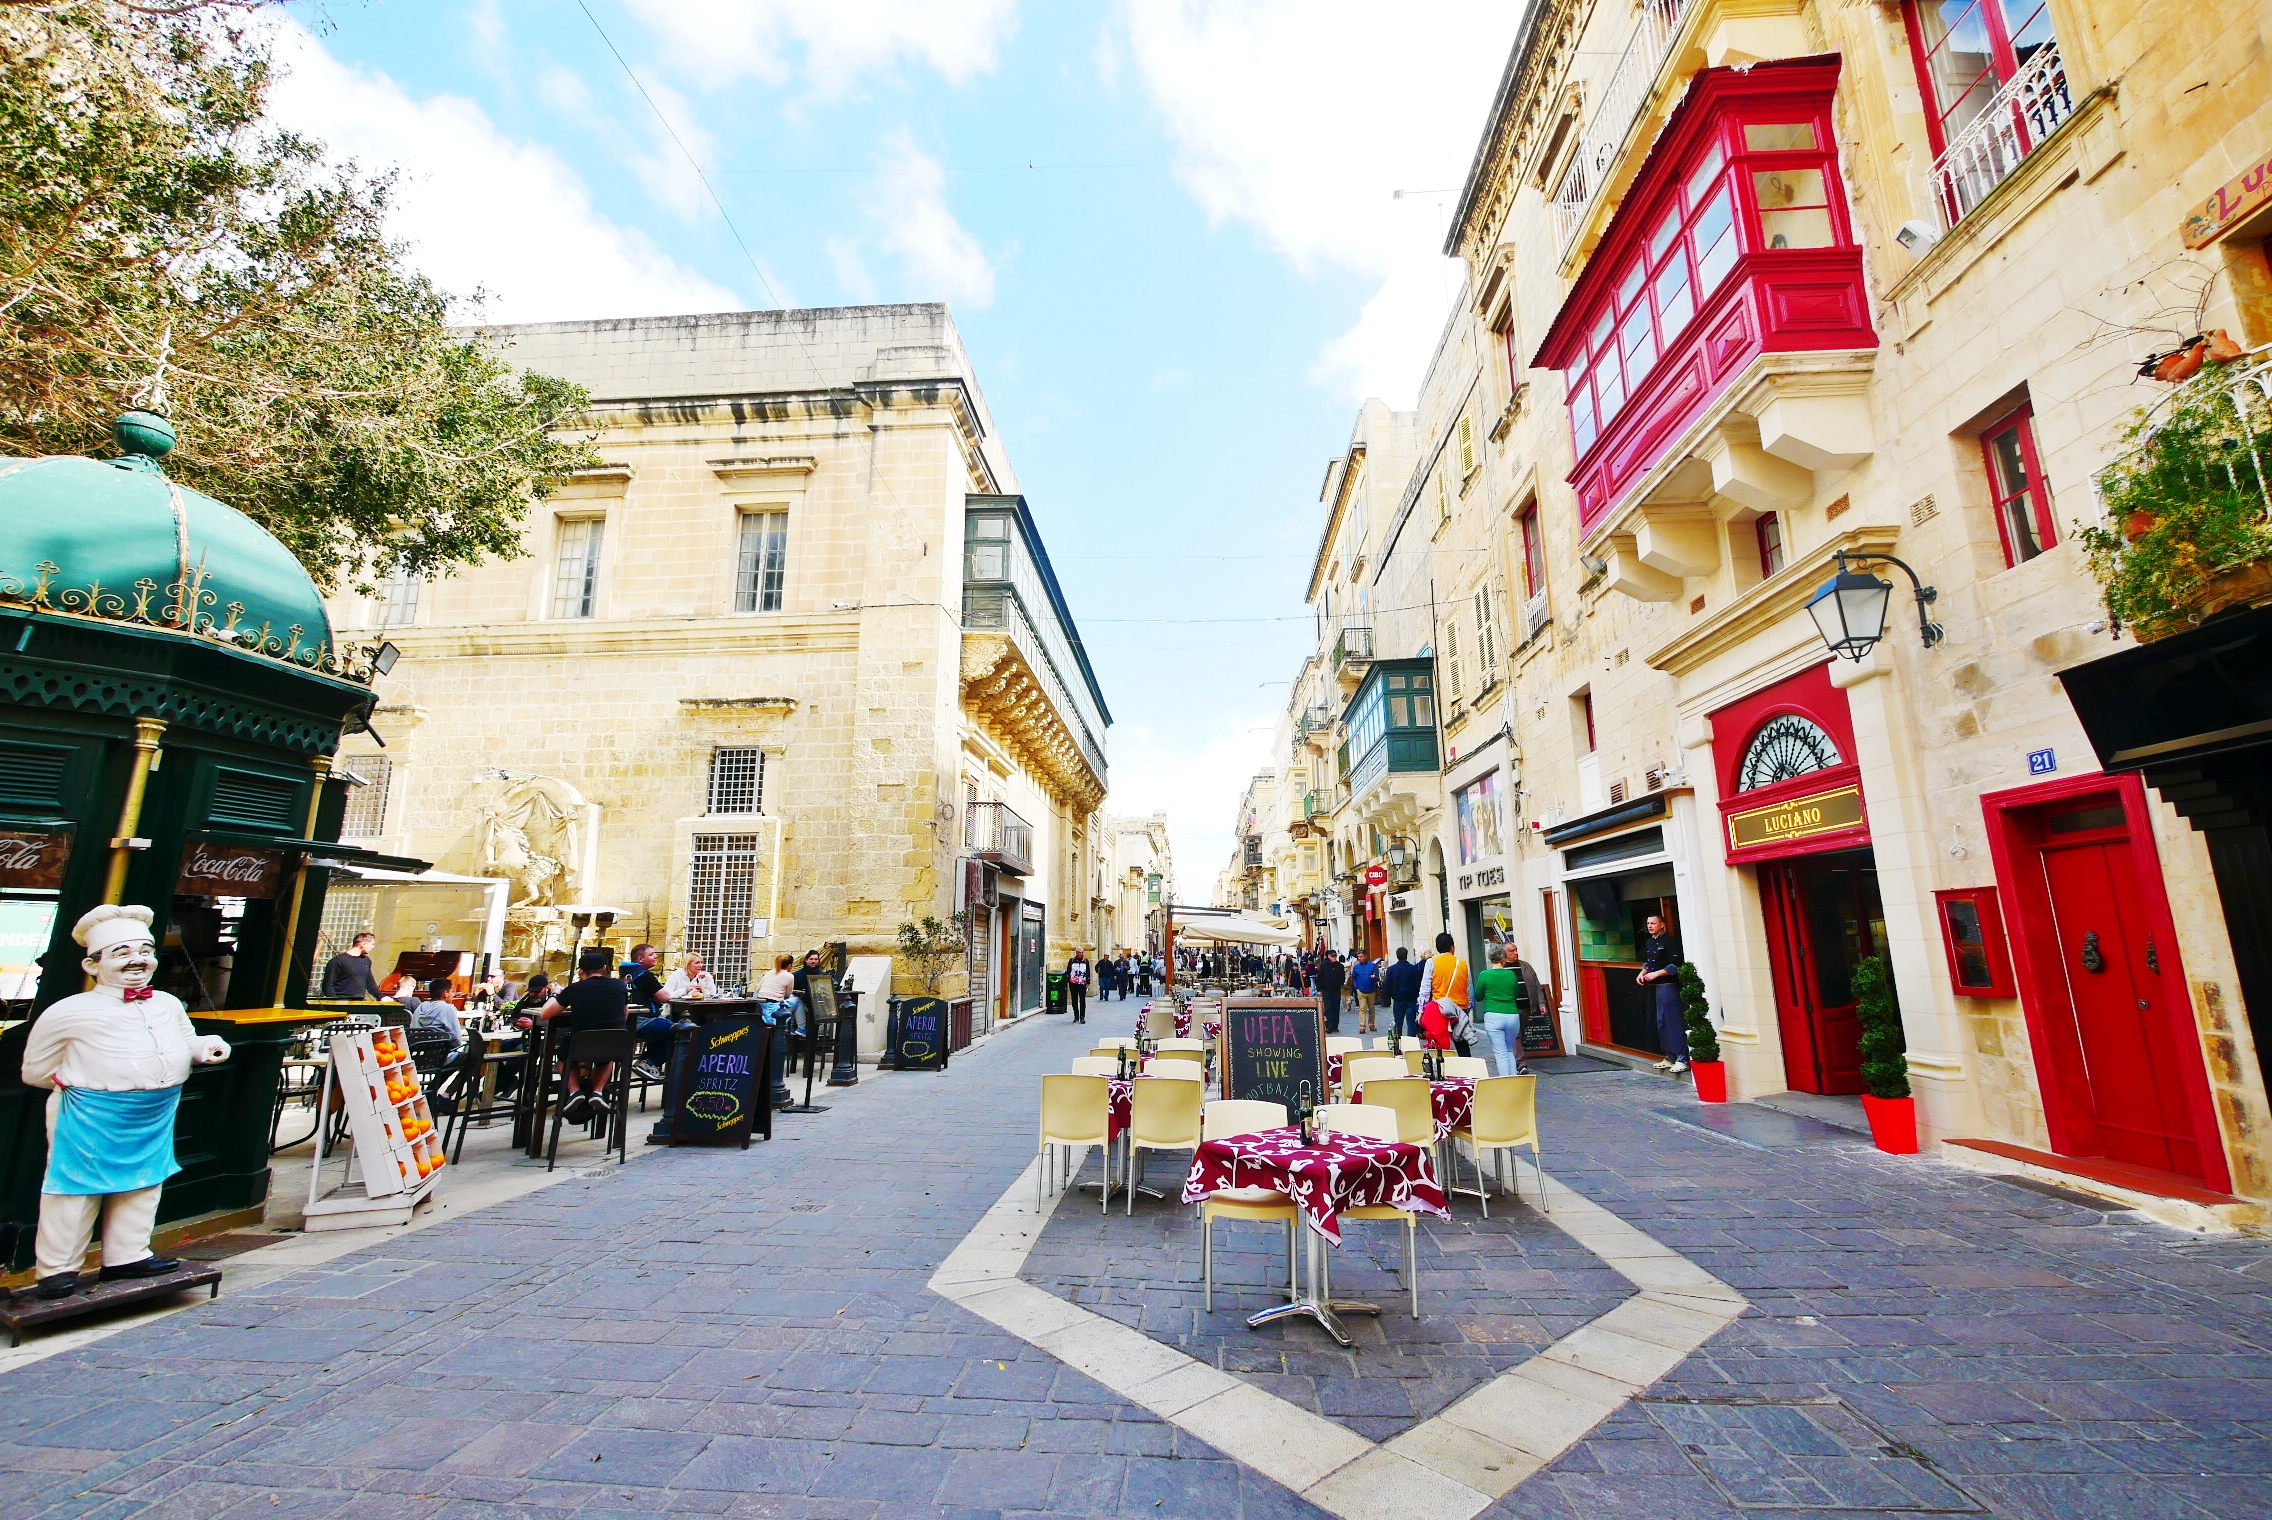 『歐洲。地中海』 馬爾他首都 瓦萊塔Valletta｜是歐洲名城也是世界上最小的首都之一  世界上最集中的歷史文化區  尊貴的金色騎士之城｜2019/0313-0318 歐洲馬爾他六天五夜之旅